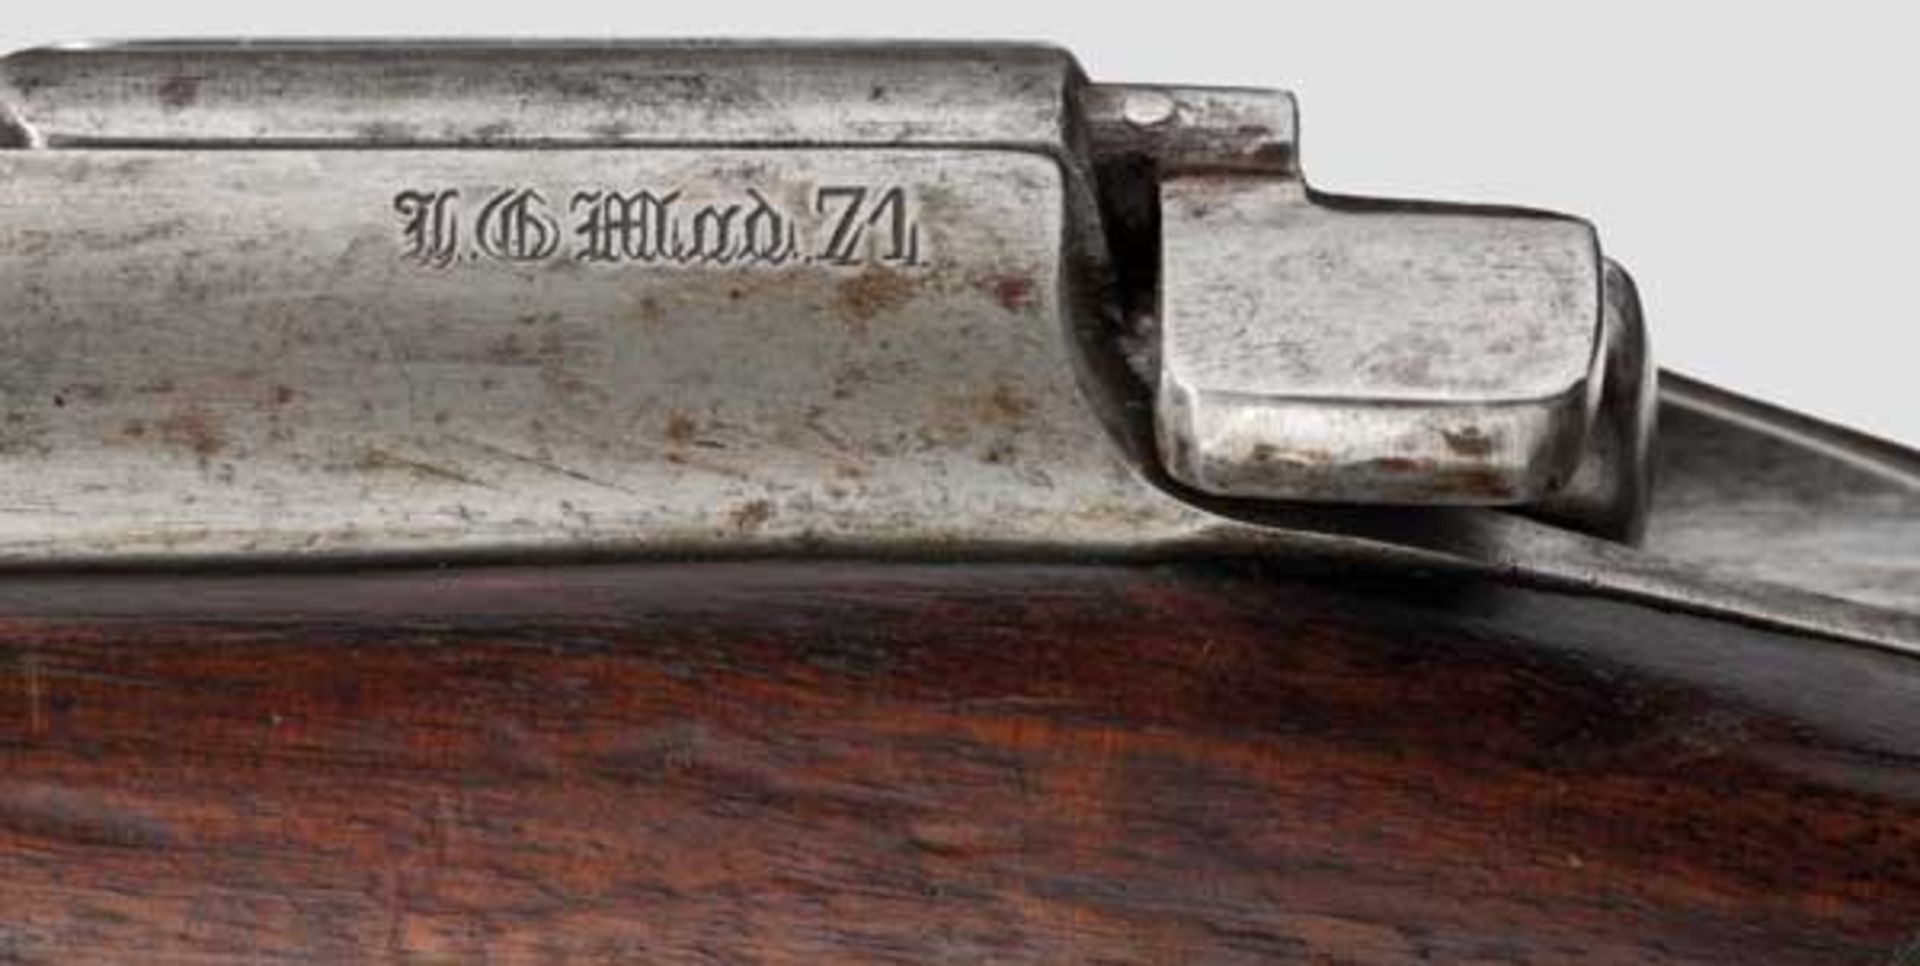 Fremdes Gewehr in deutschen Diensten: Holländ. Gewehr Beaumont M 1871, aptiert Kal. 11 mm, Nr. 24. - Bild 2 aus 3